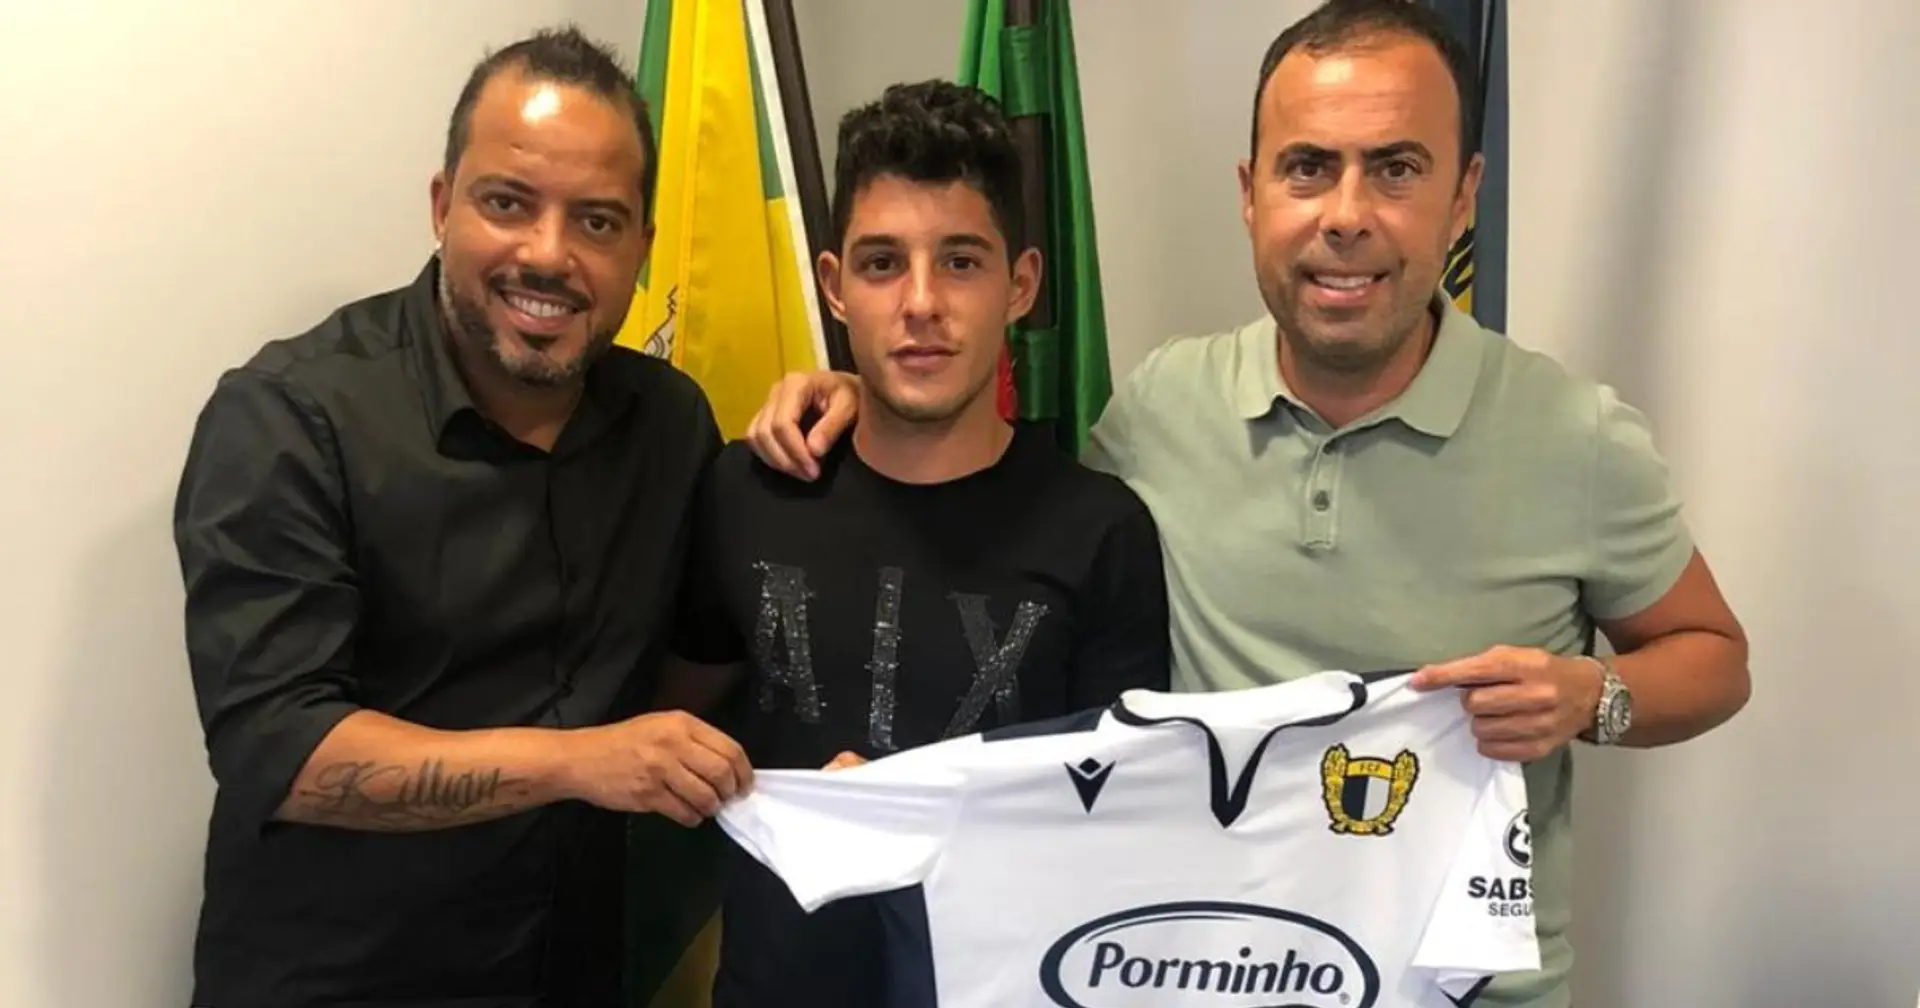 Morer, l'arrière droit prometteur du Barca B, rejoint l'équipe portugaise Famalicao pour un transfert ridicule